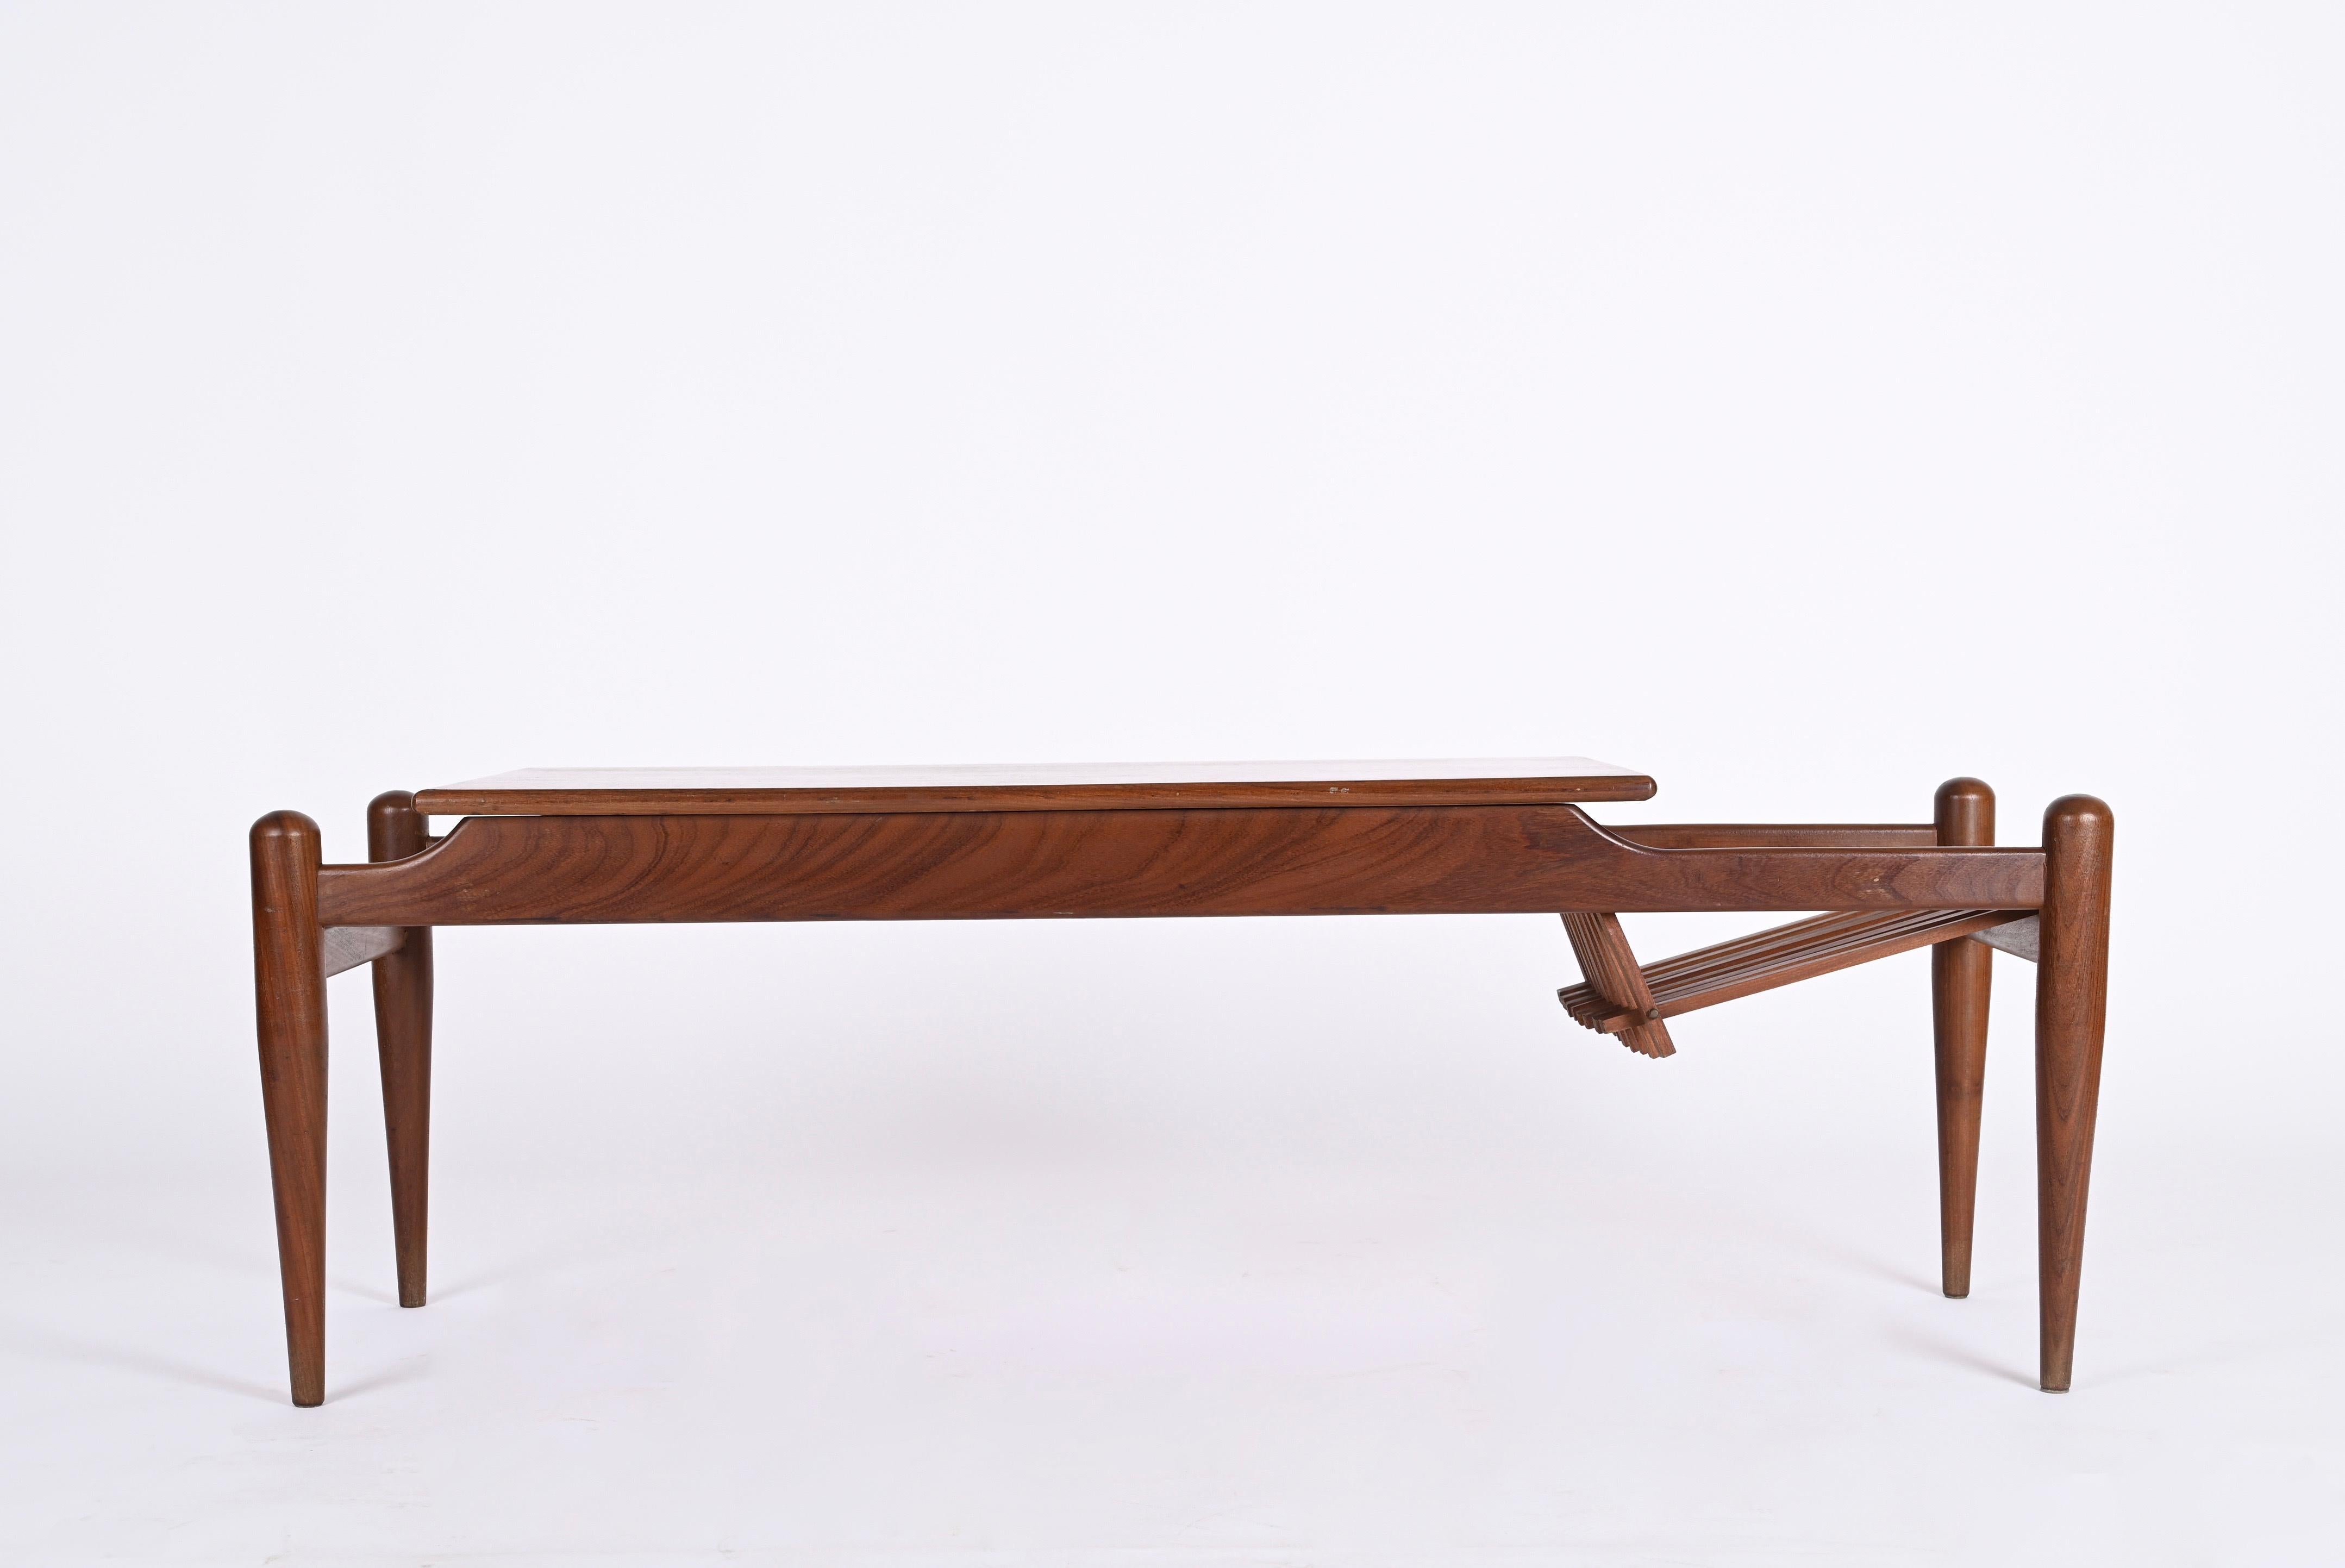 Superbe table basse avec porte-revues latéral en bois de teck. Produit en Italie dans les années 60 dans le style d'Ico Parisi.
Le grain du bois du plateau est tout simplement incroyable et la particularité de l'élégant porte-revues avec des